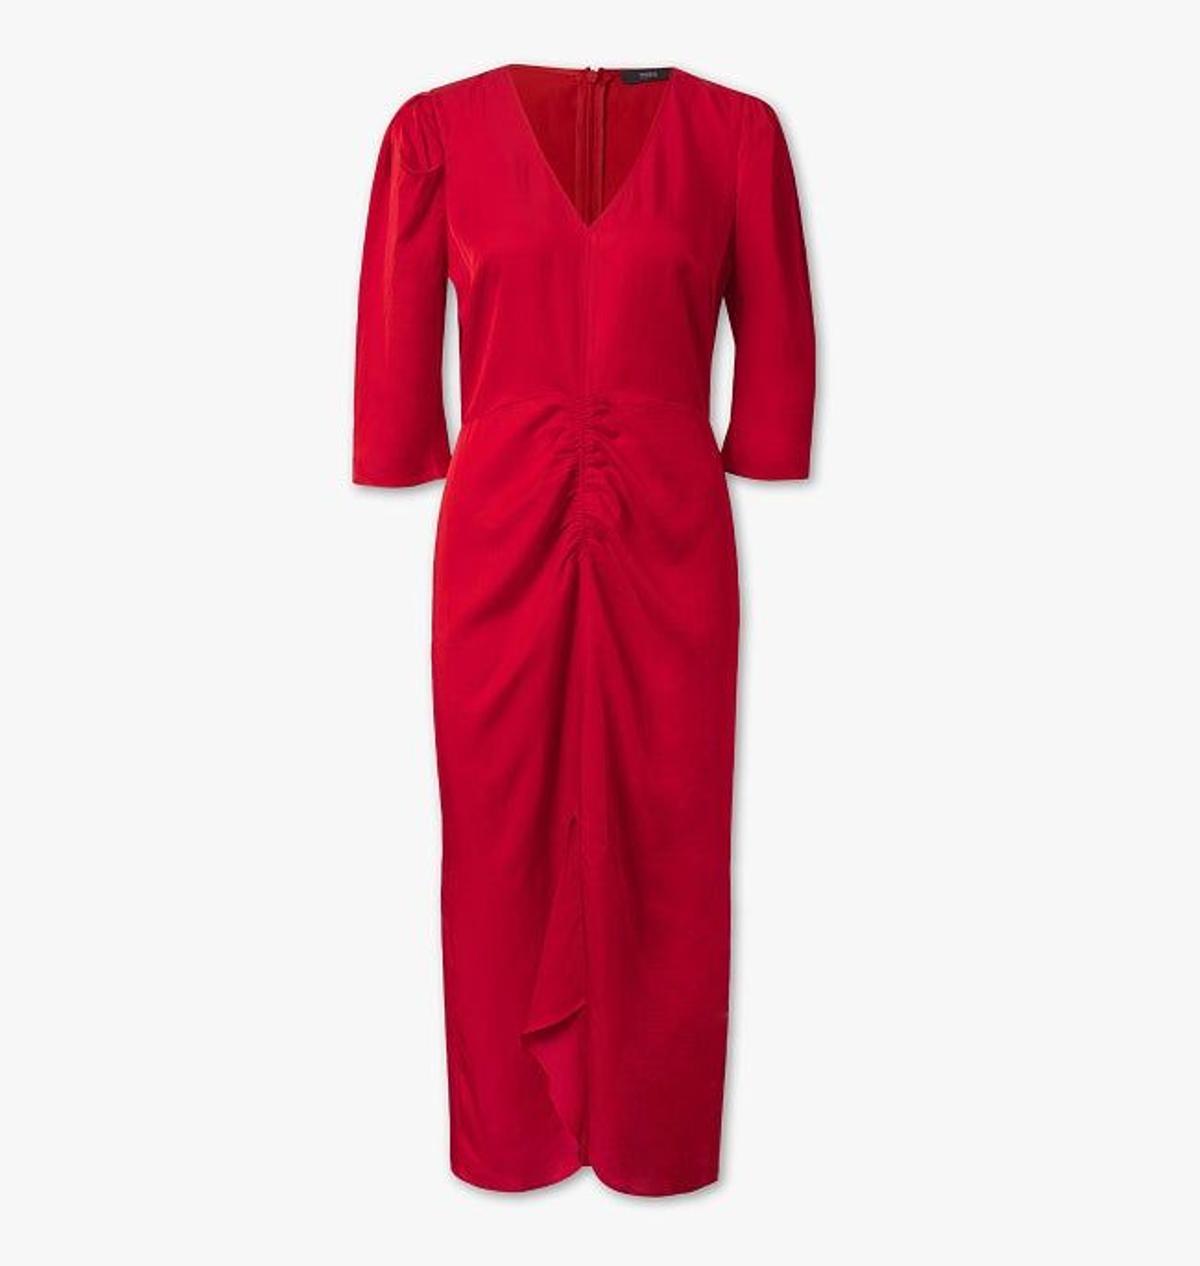 Vestido rojo de C&amp;A. (Precio: 39, 90 euros)